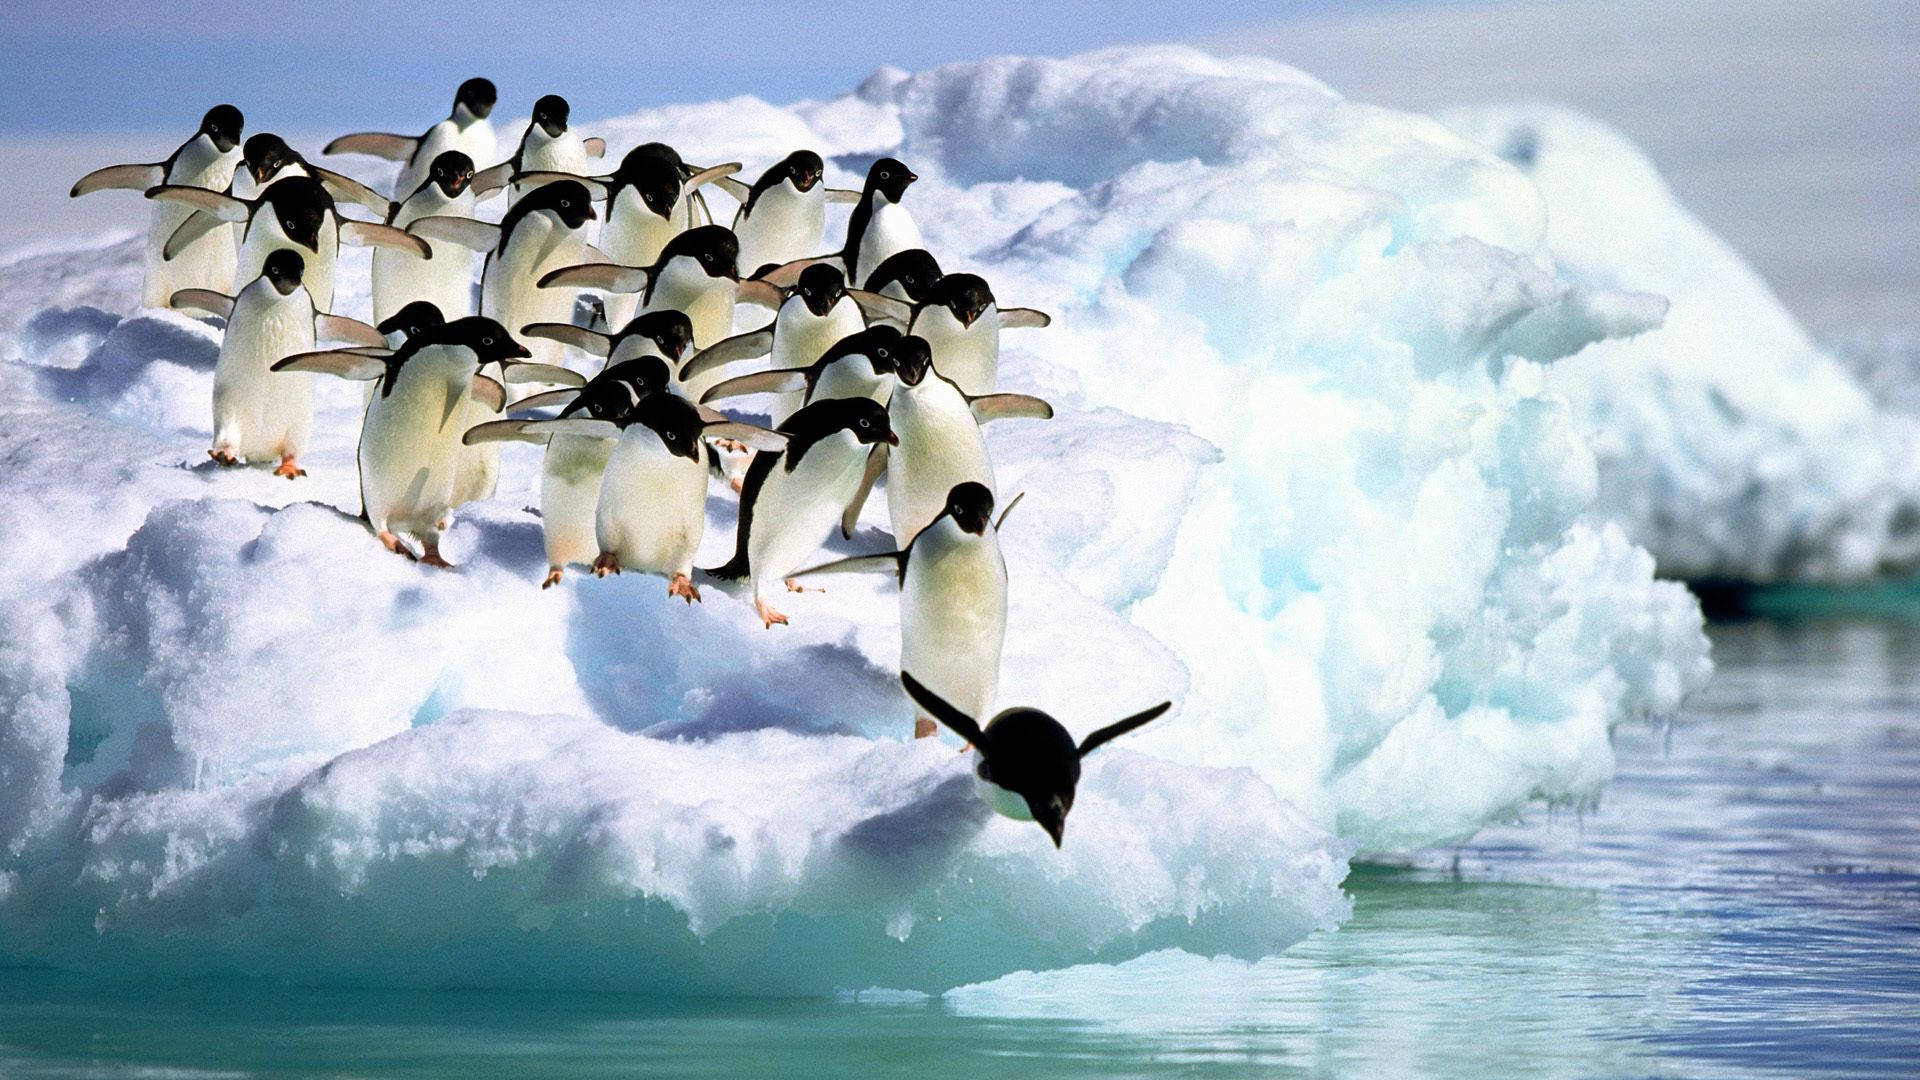 Penguins On Iceberg Background